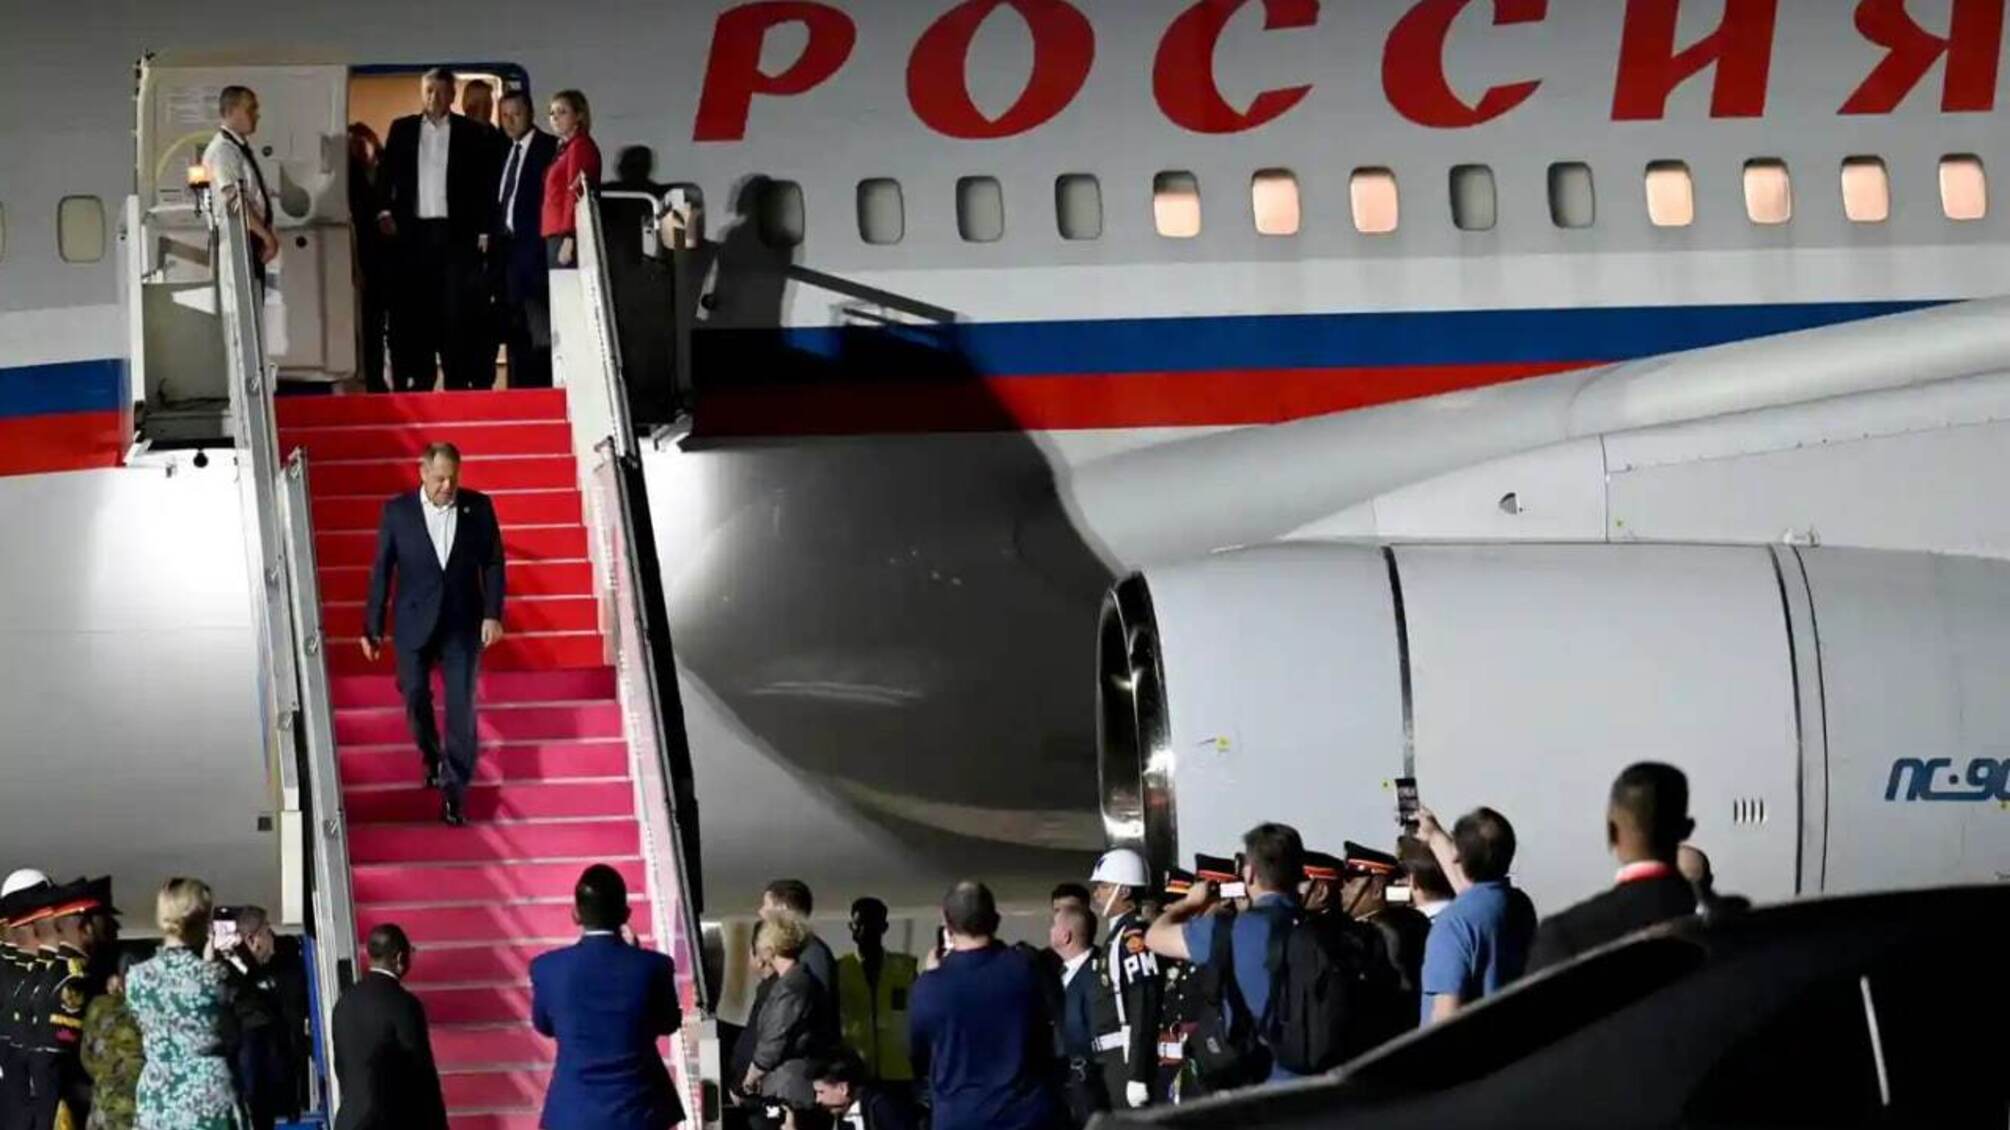 Лаврова доставили в больницу по прибытии на саммит G-20, – The Guardian (обновлено)